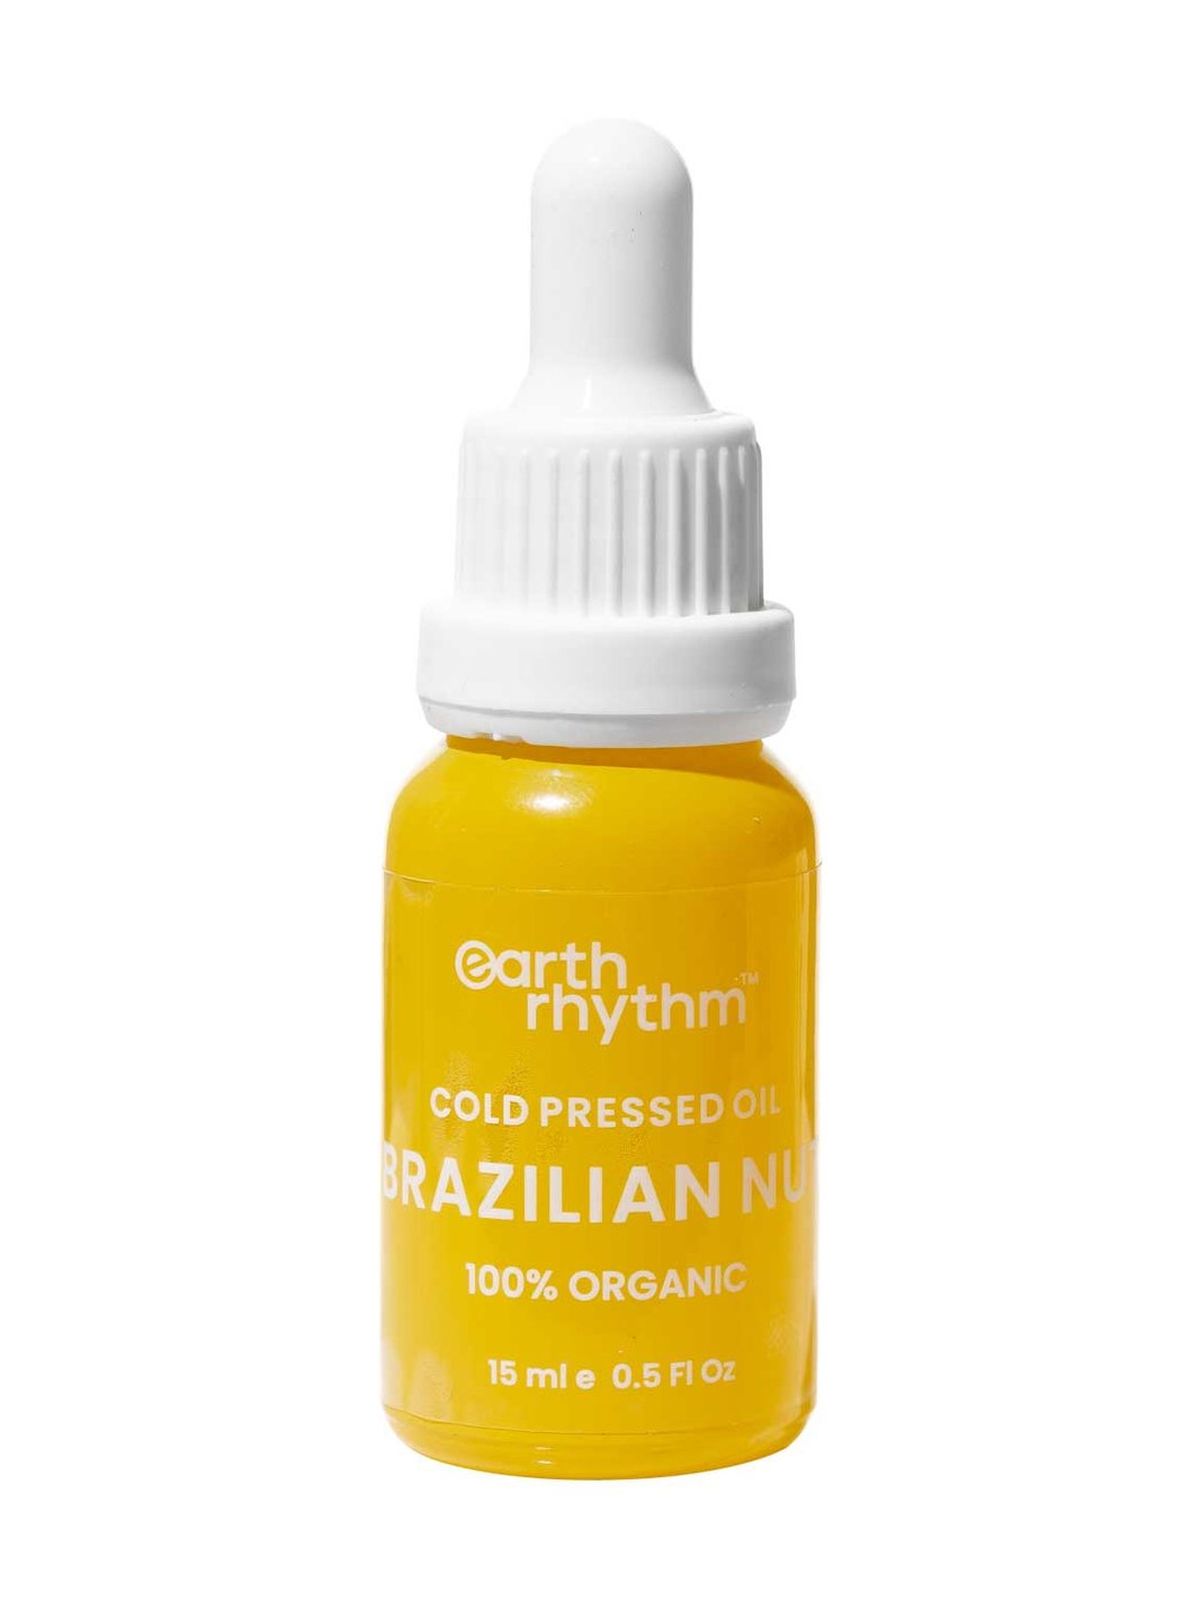 Масло бразильского ореха для лица Earth Rhythm Brazilian Nut Cold Pressed Oil